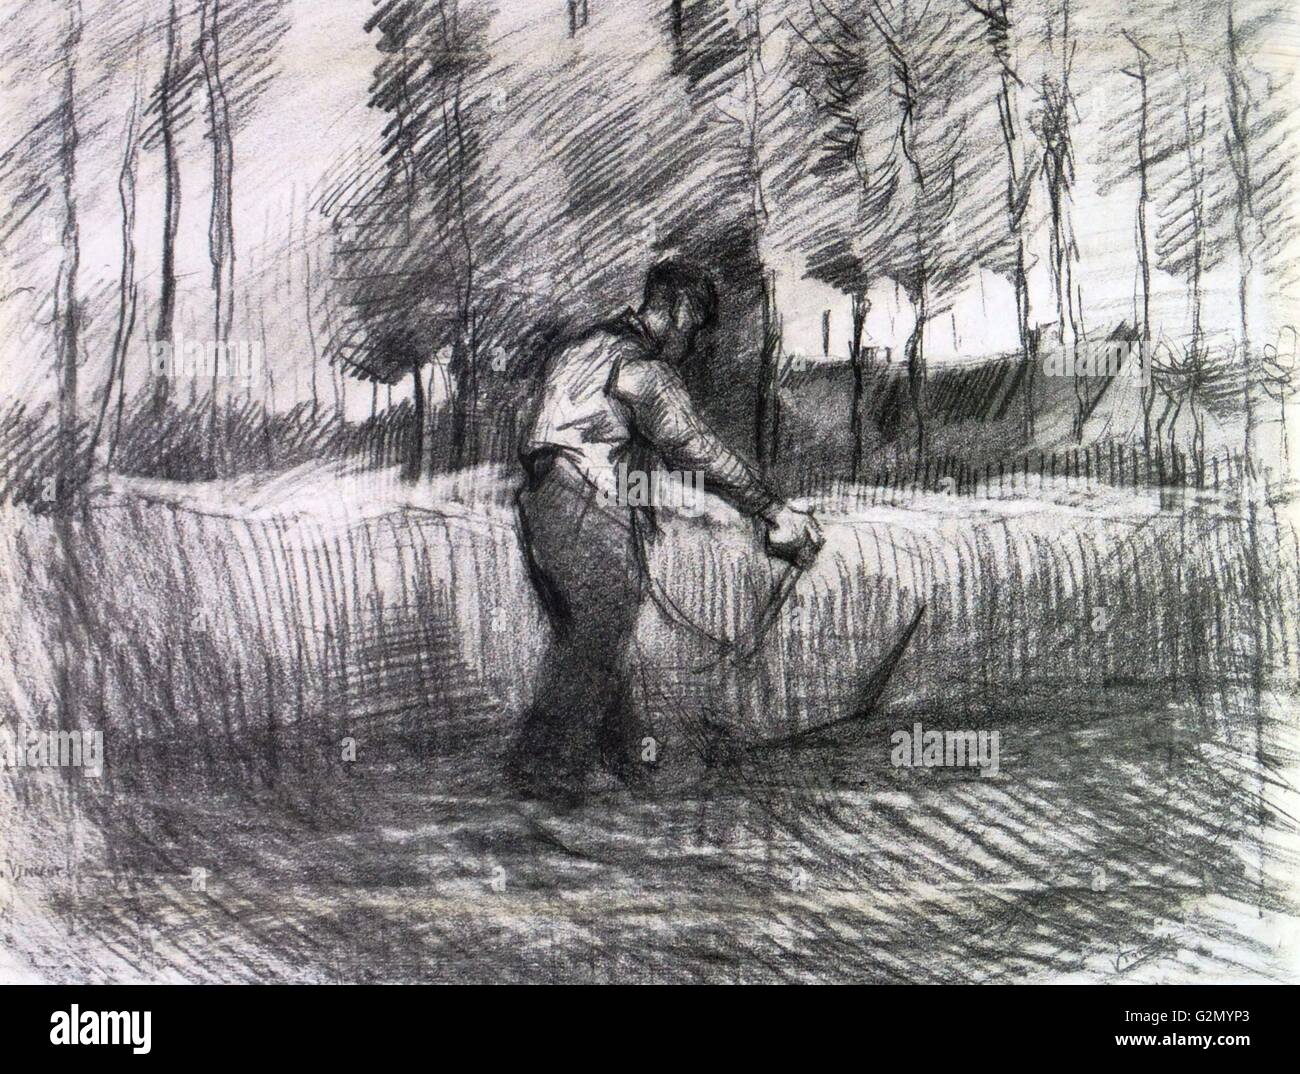 Pintada por el famoso artista holandés Vincent Van Gogh (30 de marzo de 1853 - 29 de julio de 1890), el trabajo titulado "campo de trigo con árboles y sacudiendo el agricultor'. Terminado en 1885. Foto de stock